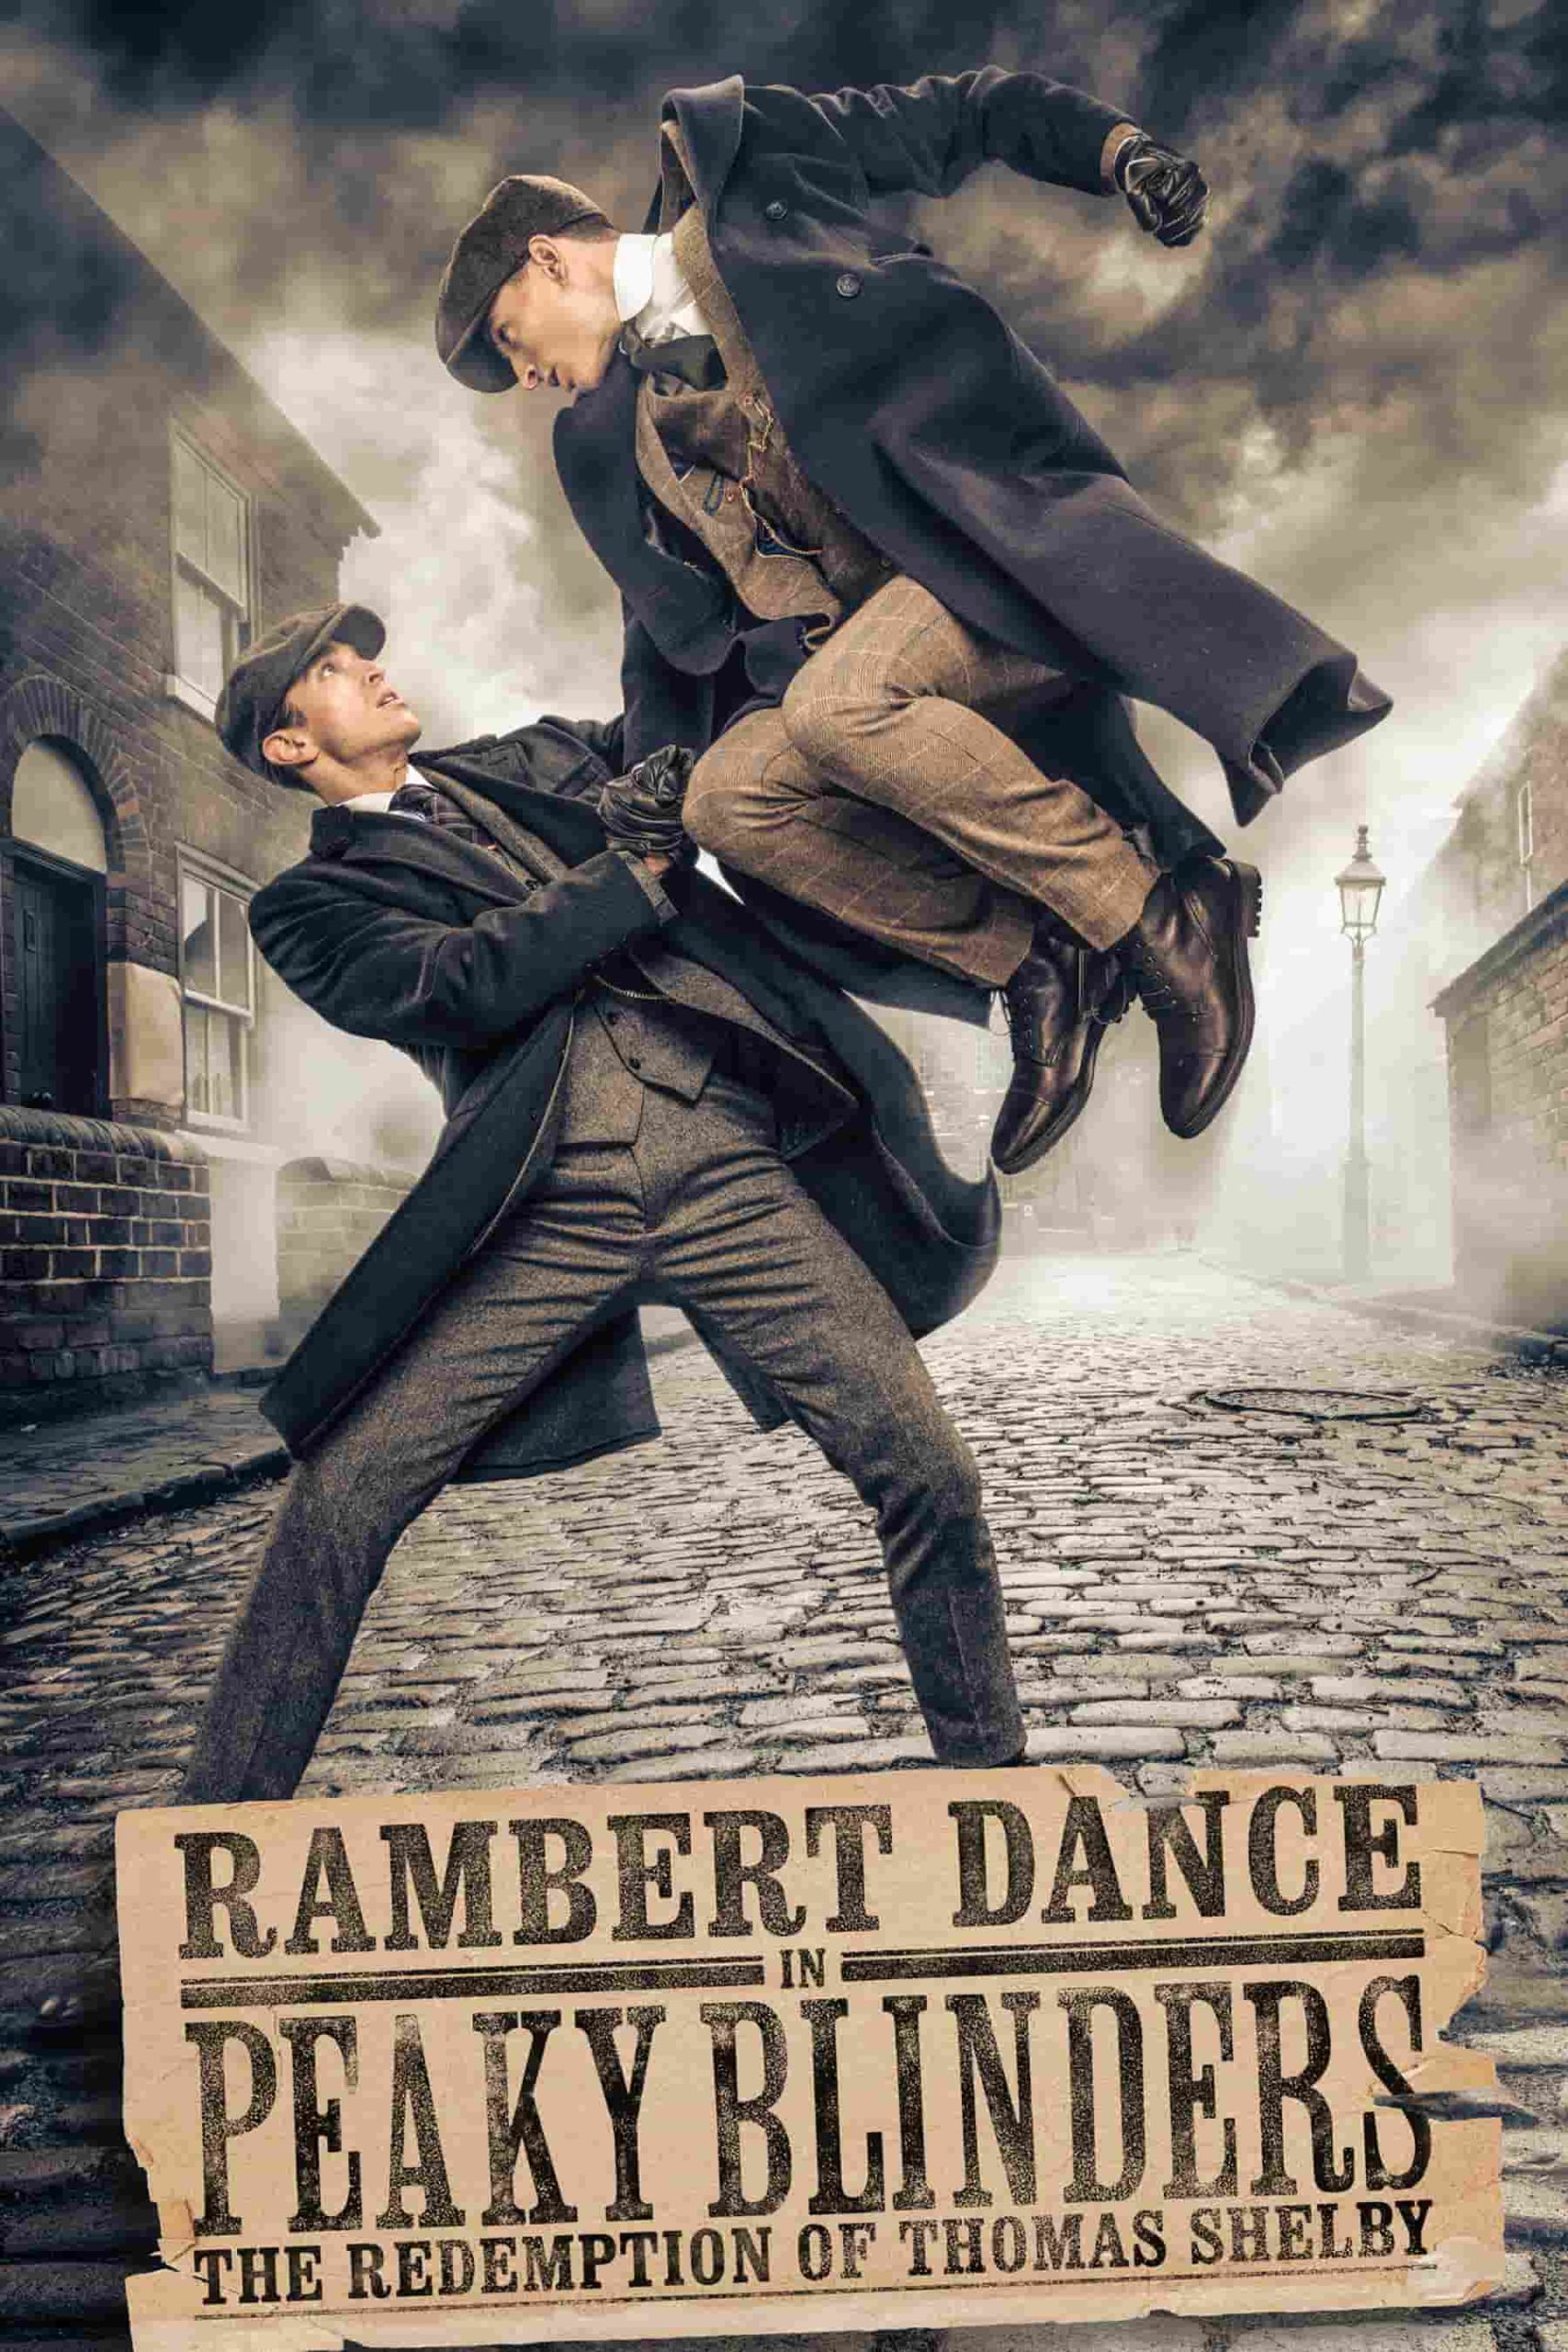 Rambert dance Peaky Blinders theatrical poster